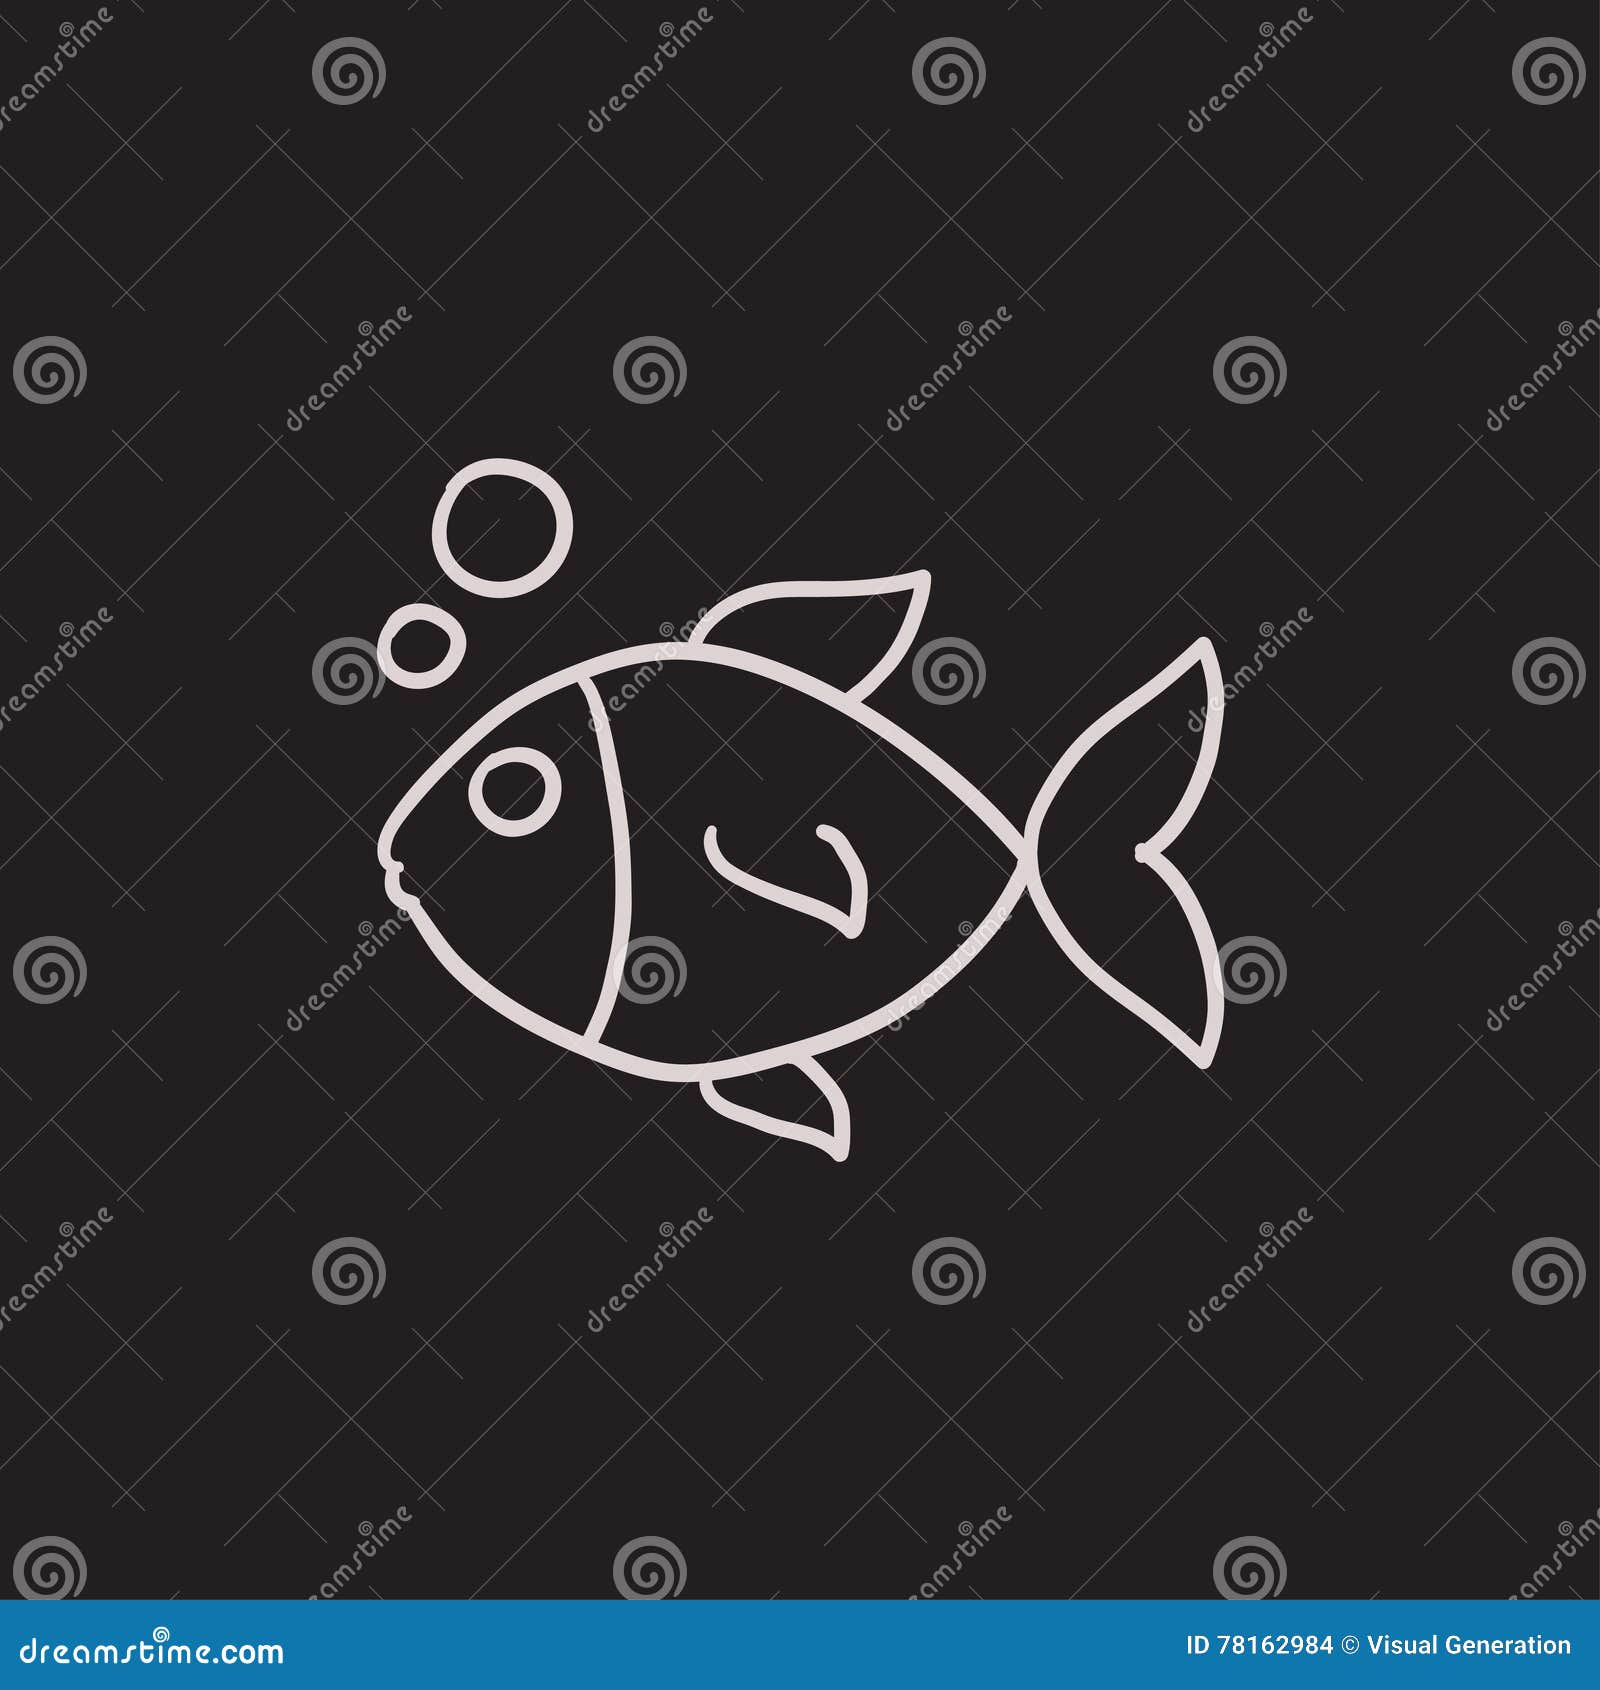 Small fish sketch icon., Stock vector